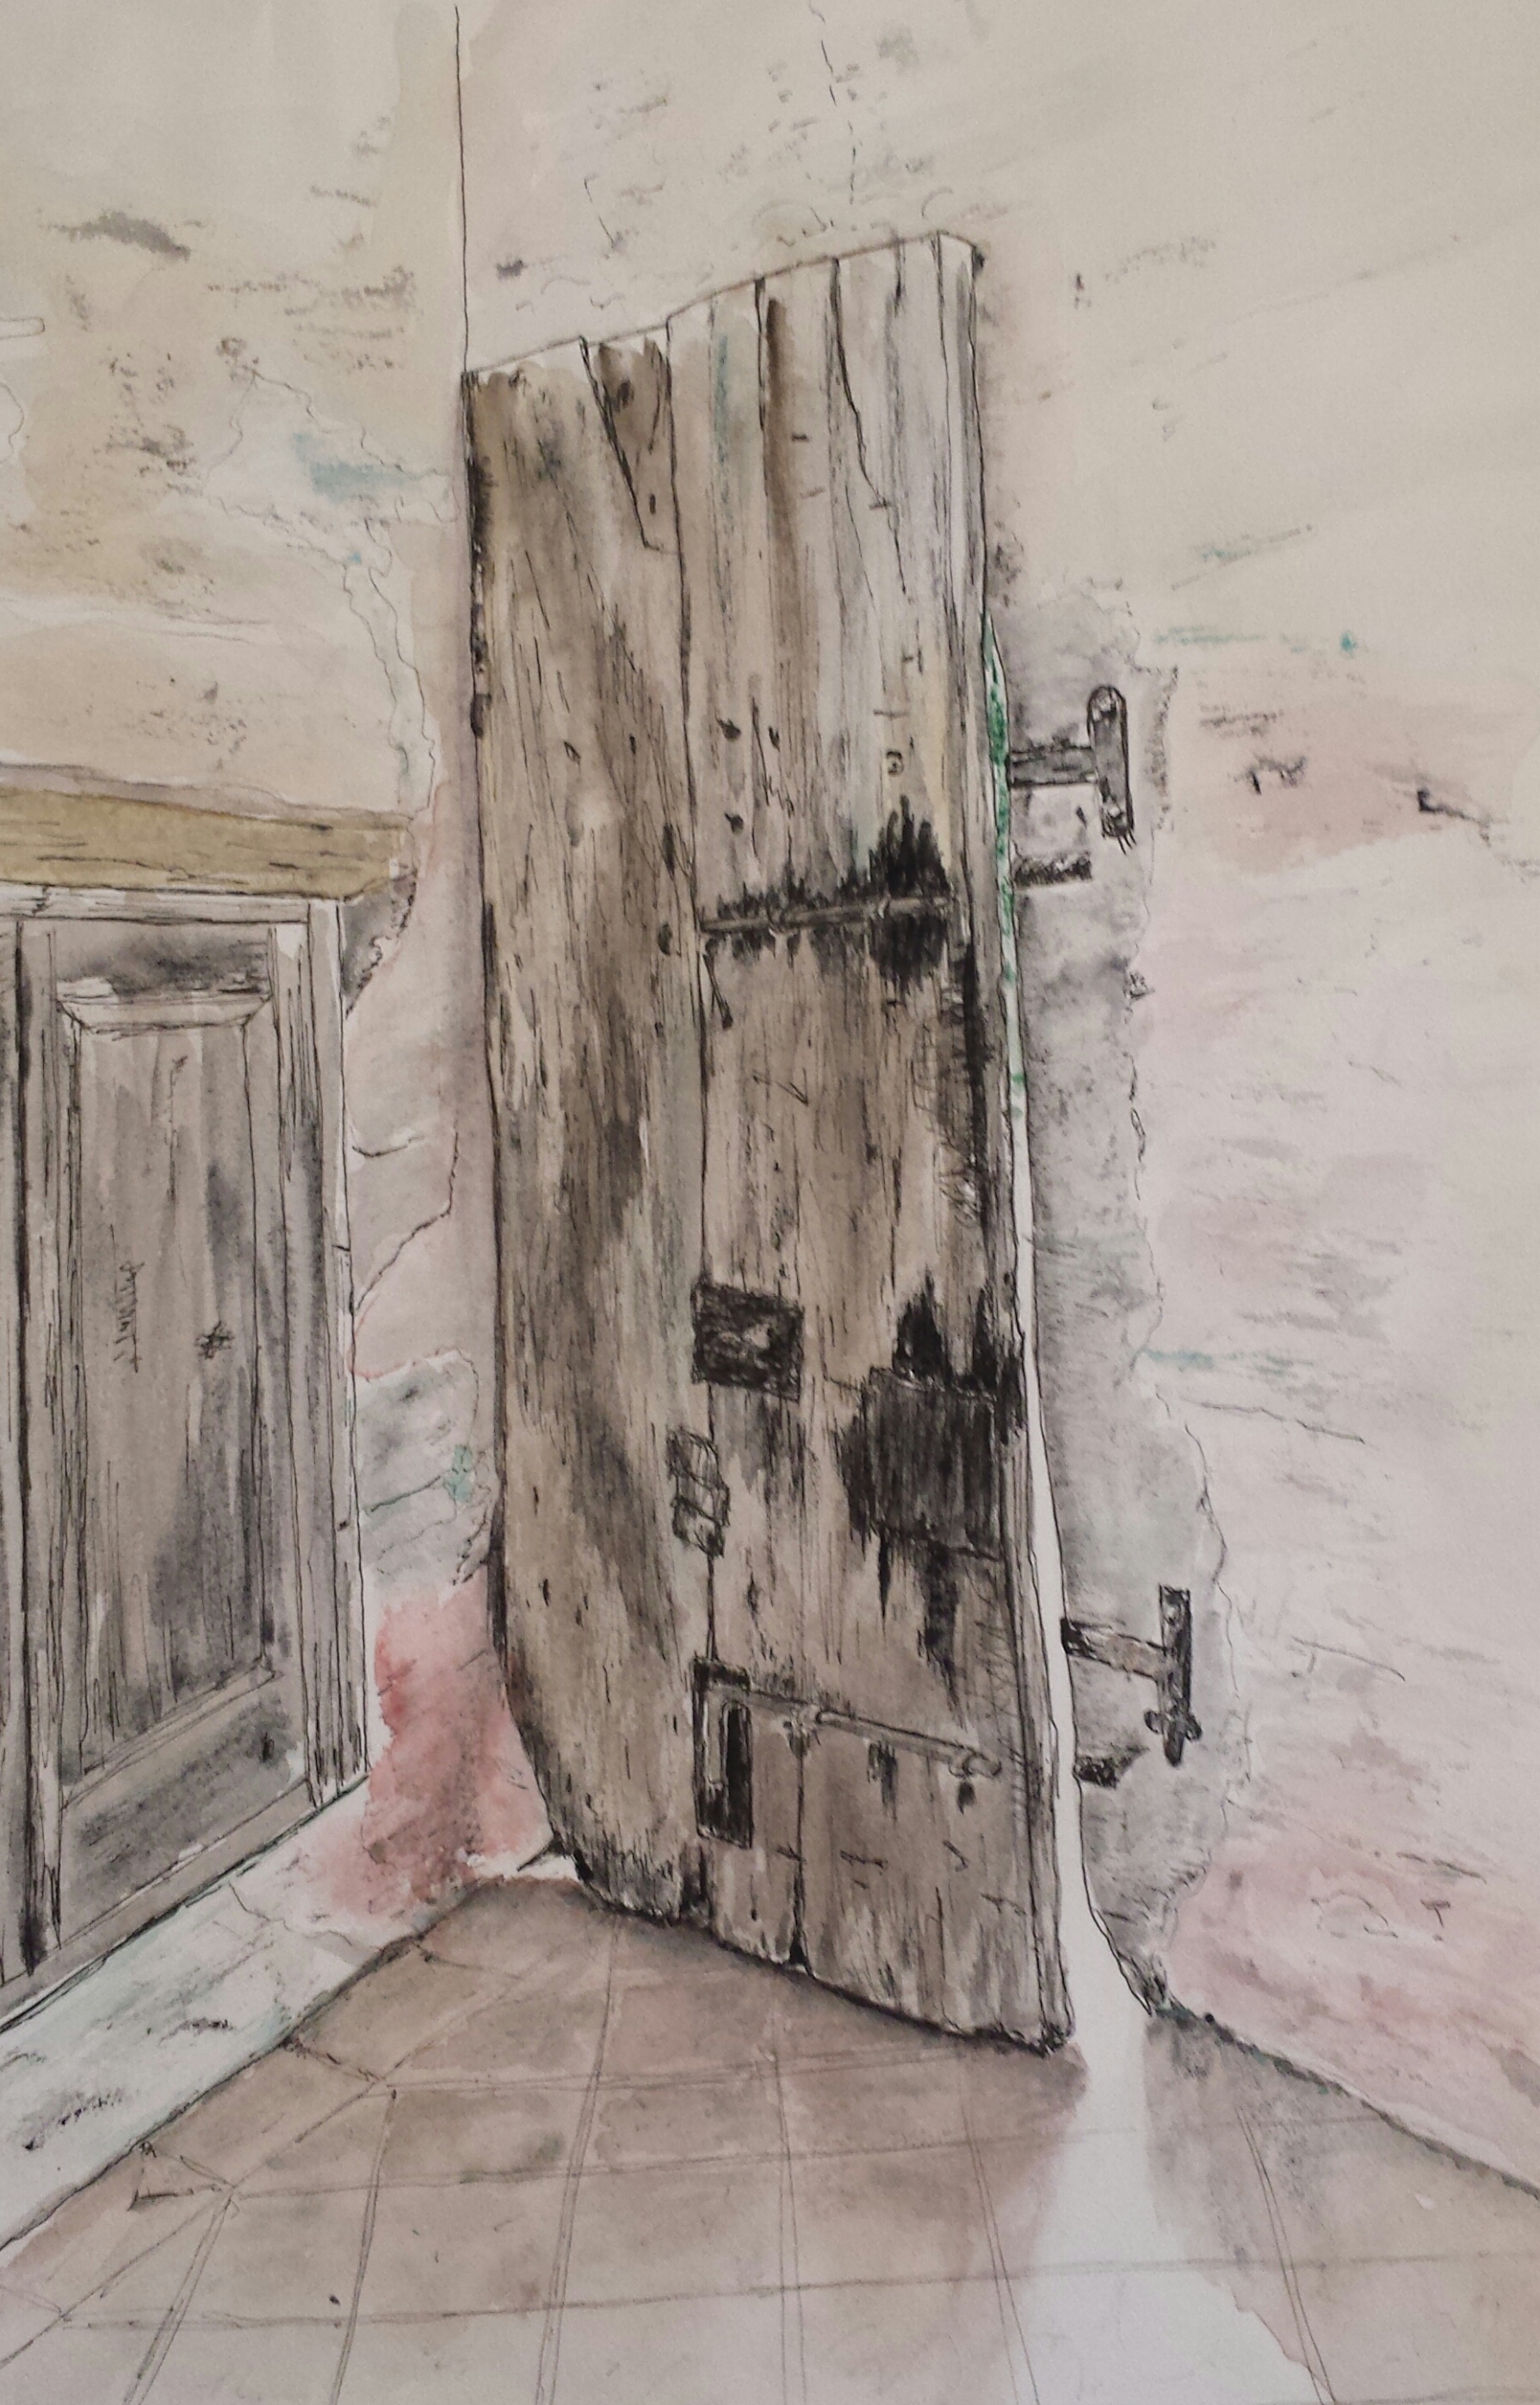 Ink & Wash Watercolor Doorway